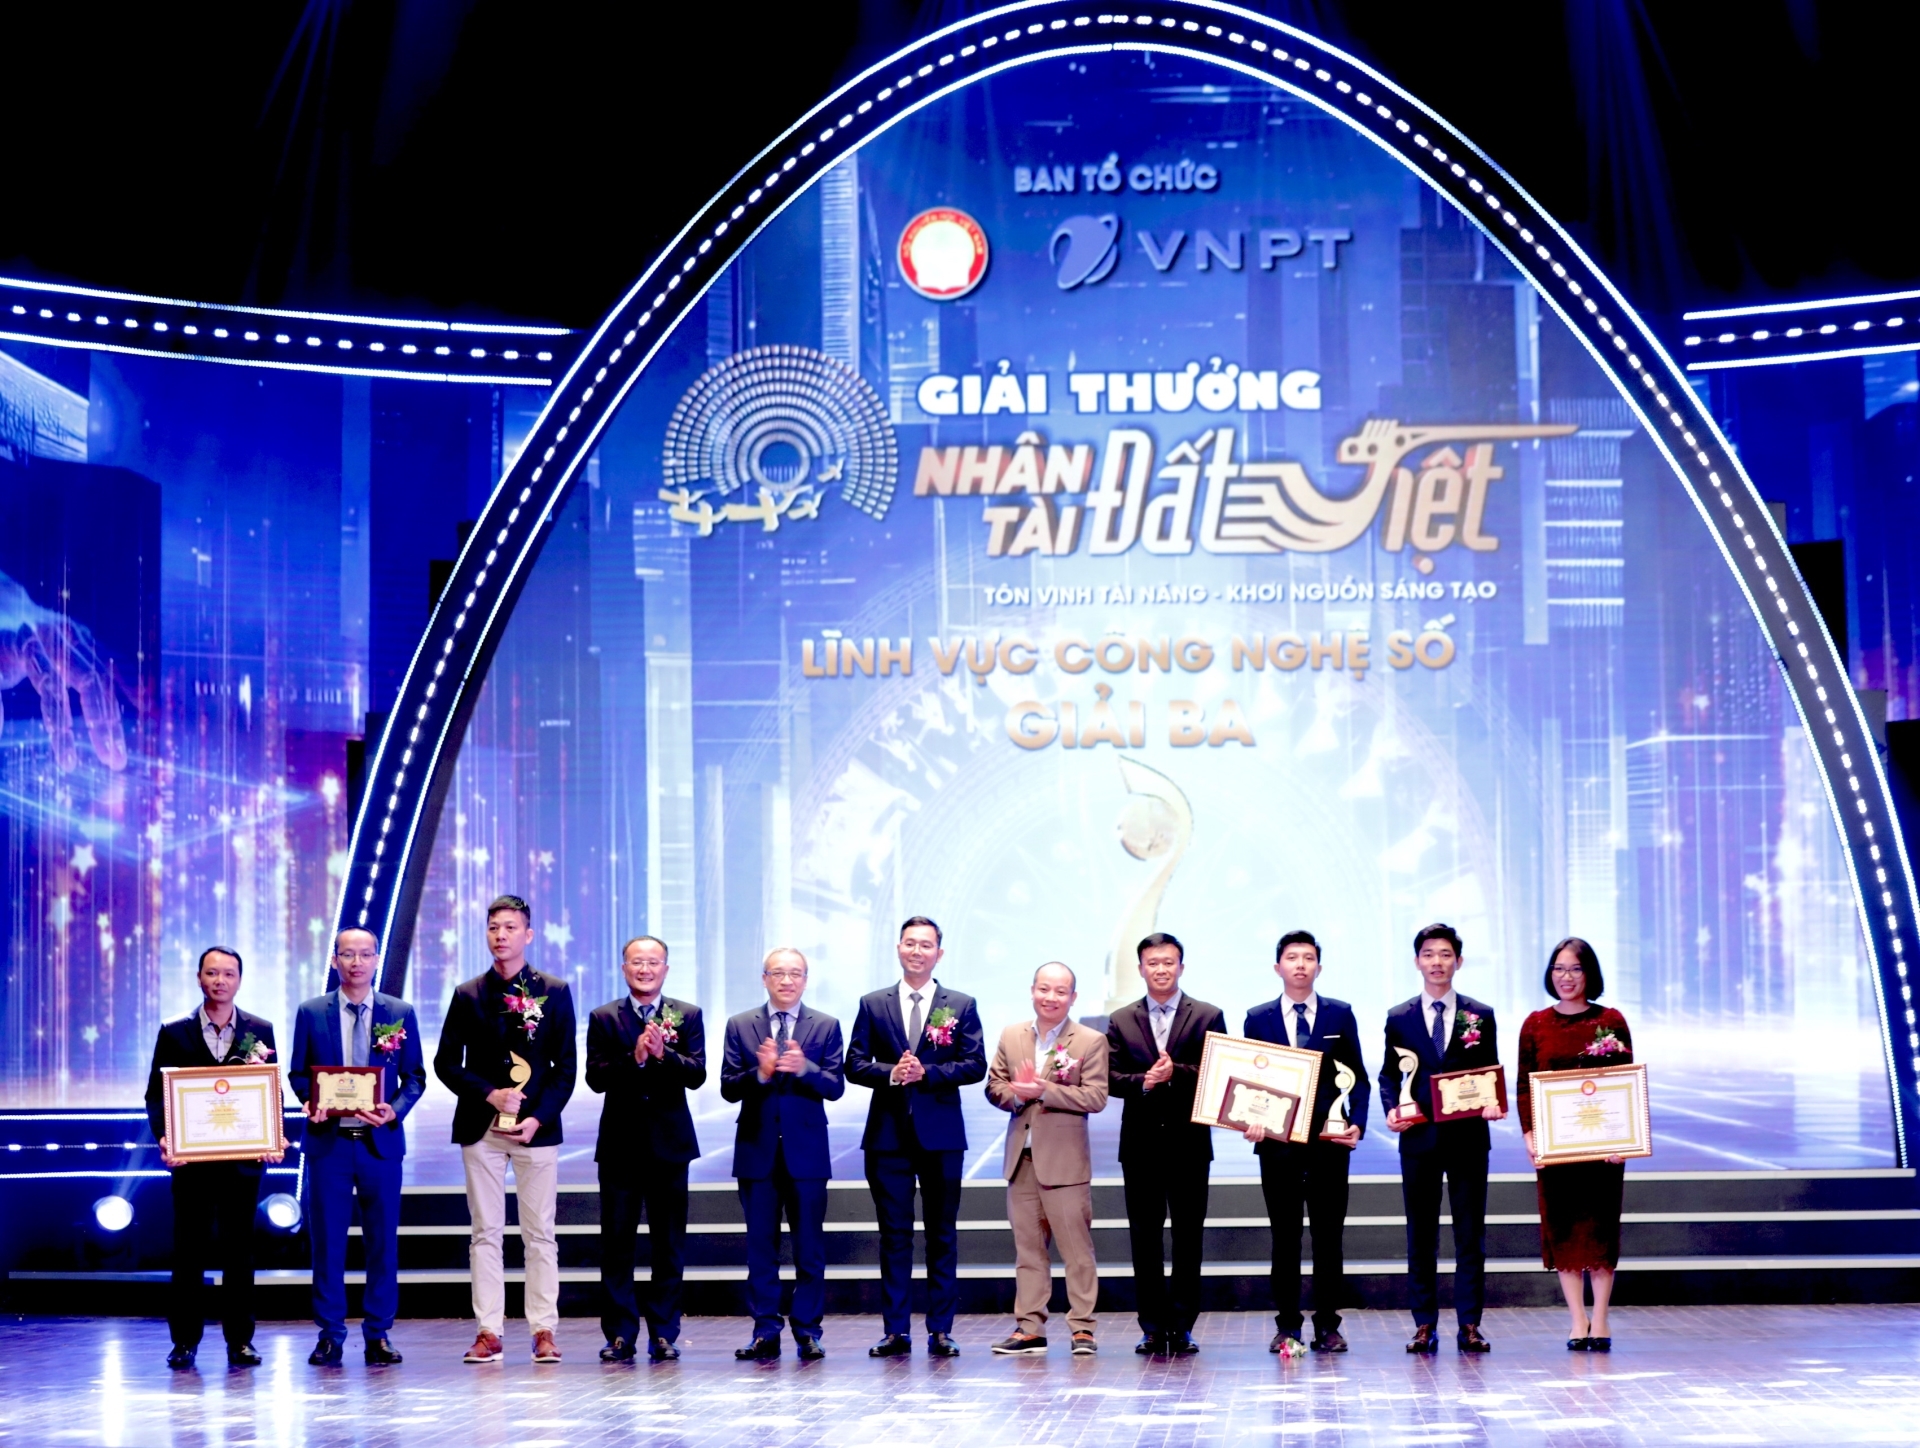 Ban Tổ chức trao giải Nhì giải Công nghệ số cho tác giả, nhóm tác giải xuất sắc, giải thưởng Nhân tài Đất Việt lần thứ 17. (Ảnh: TA)